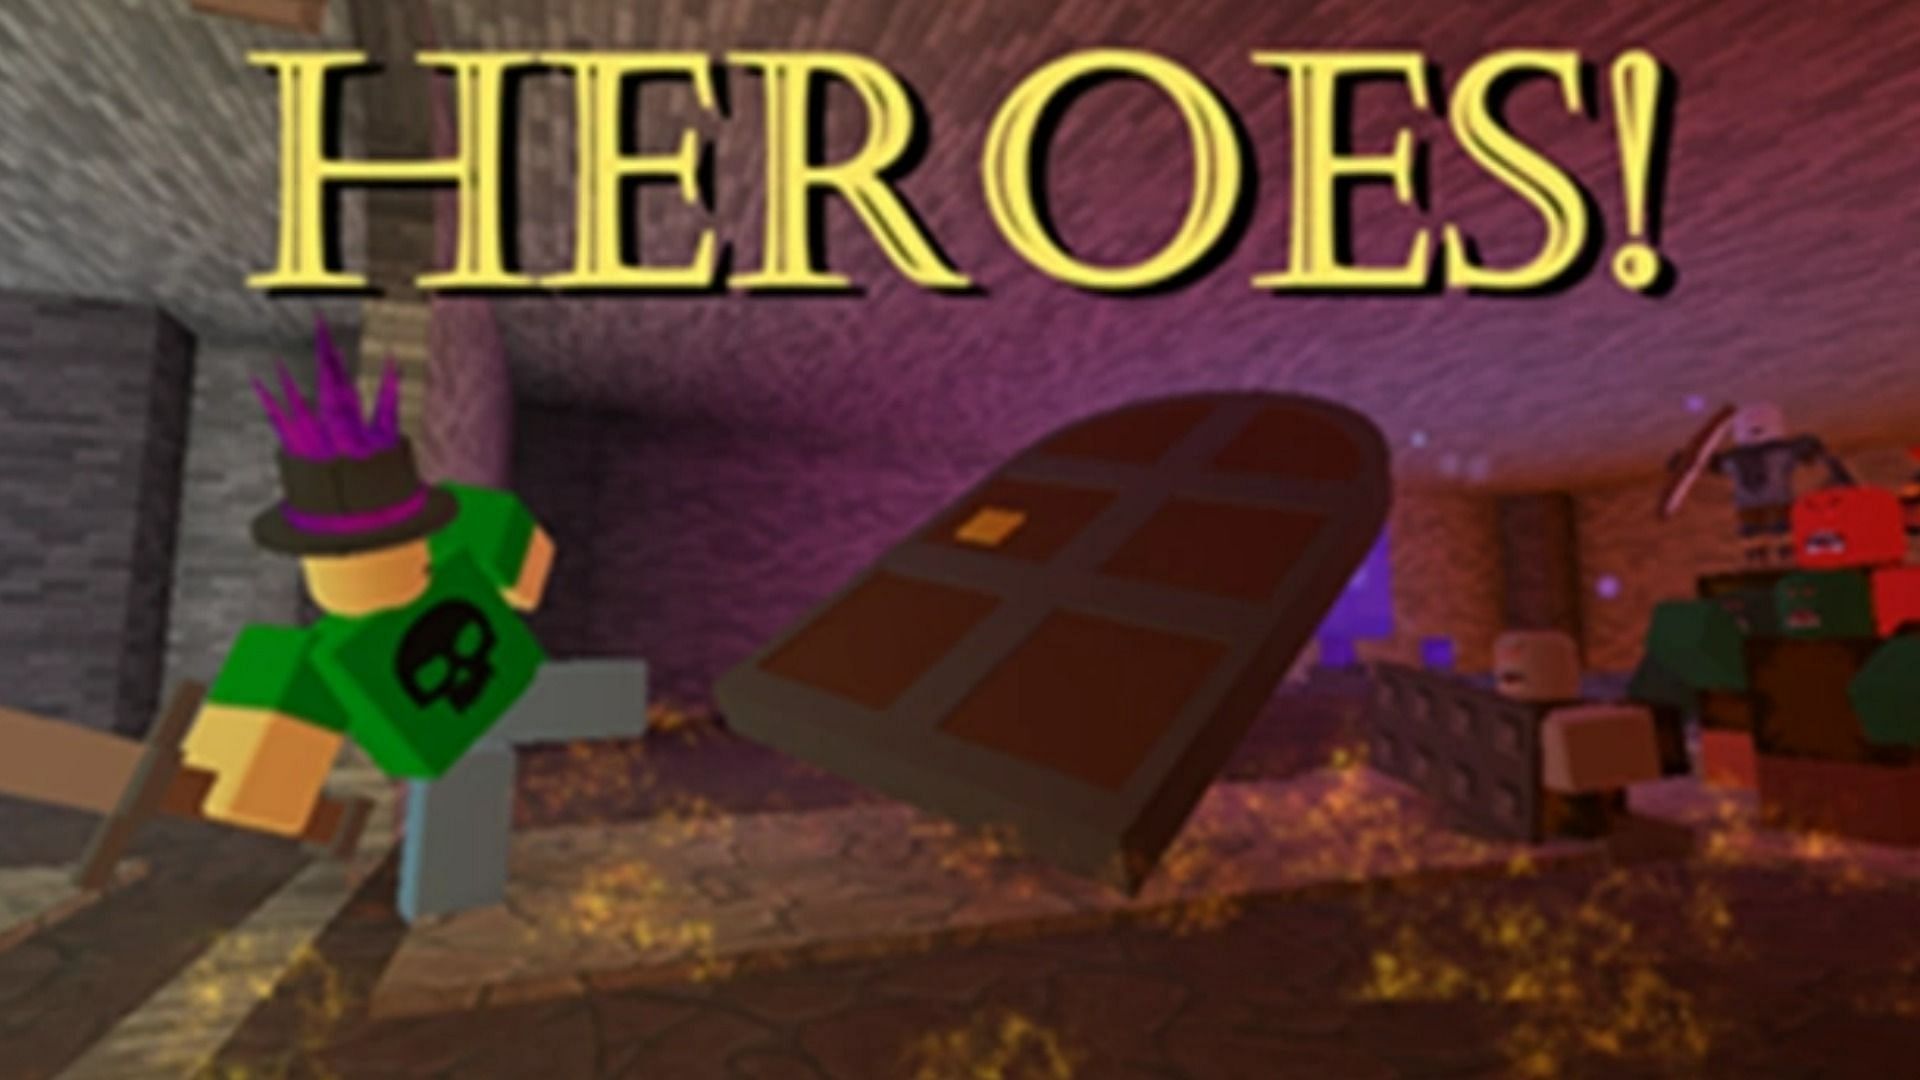 Heroes - RPG game (Image via Roblox wiki)